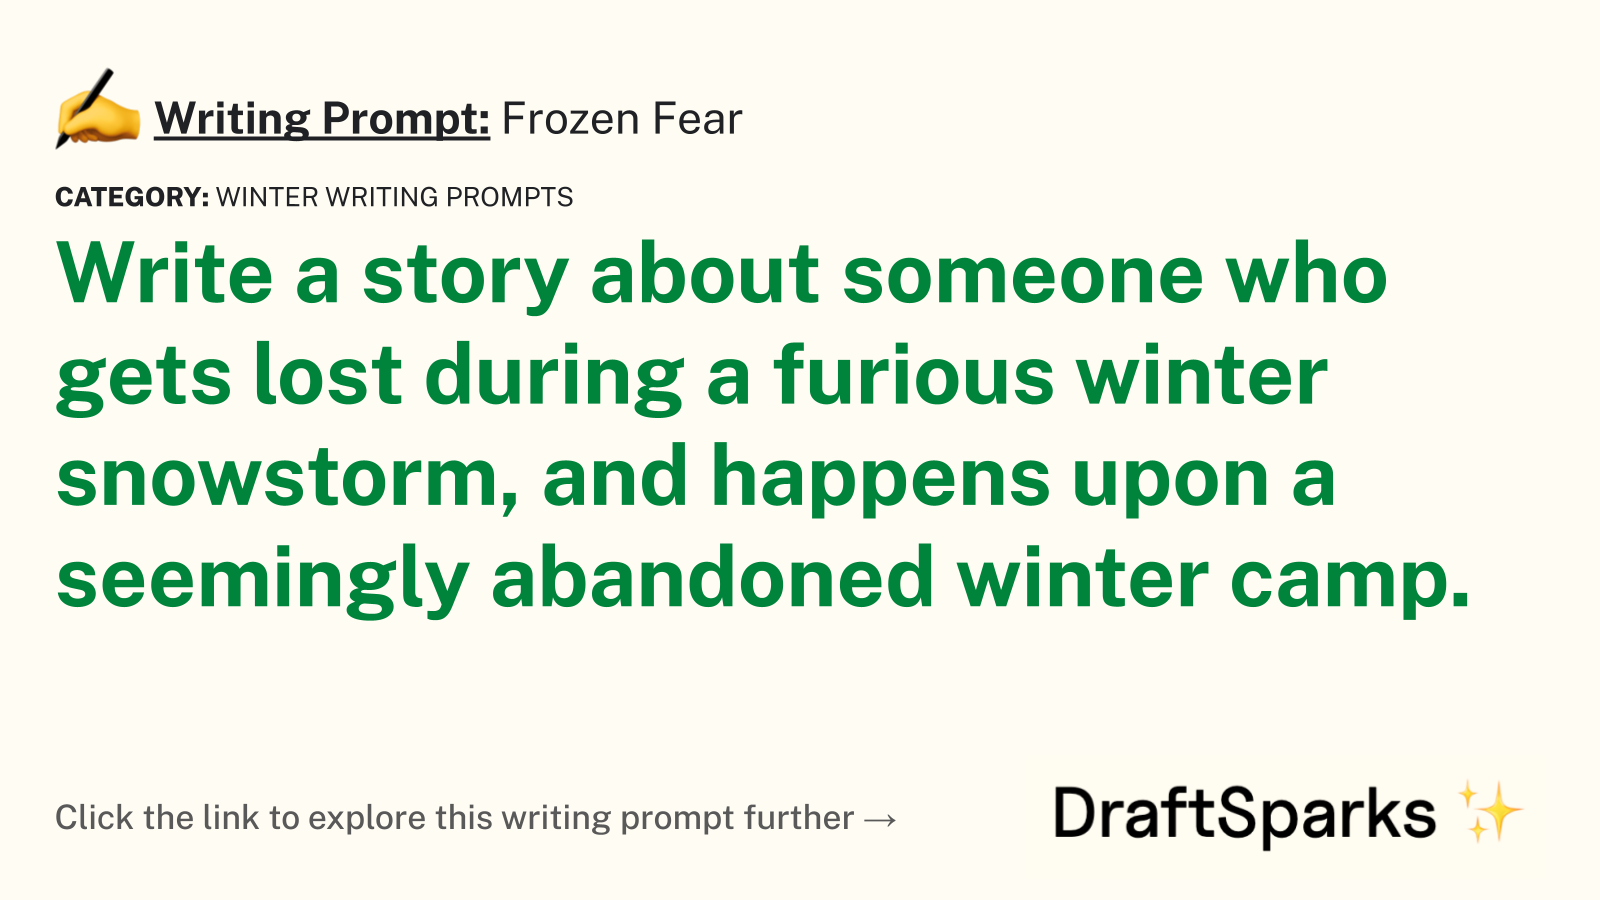 Frozen Fear